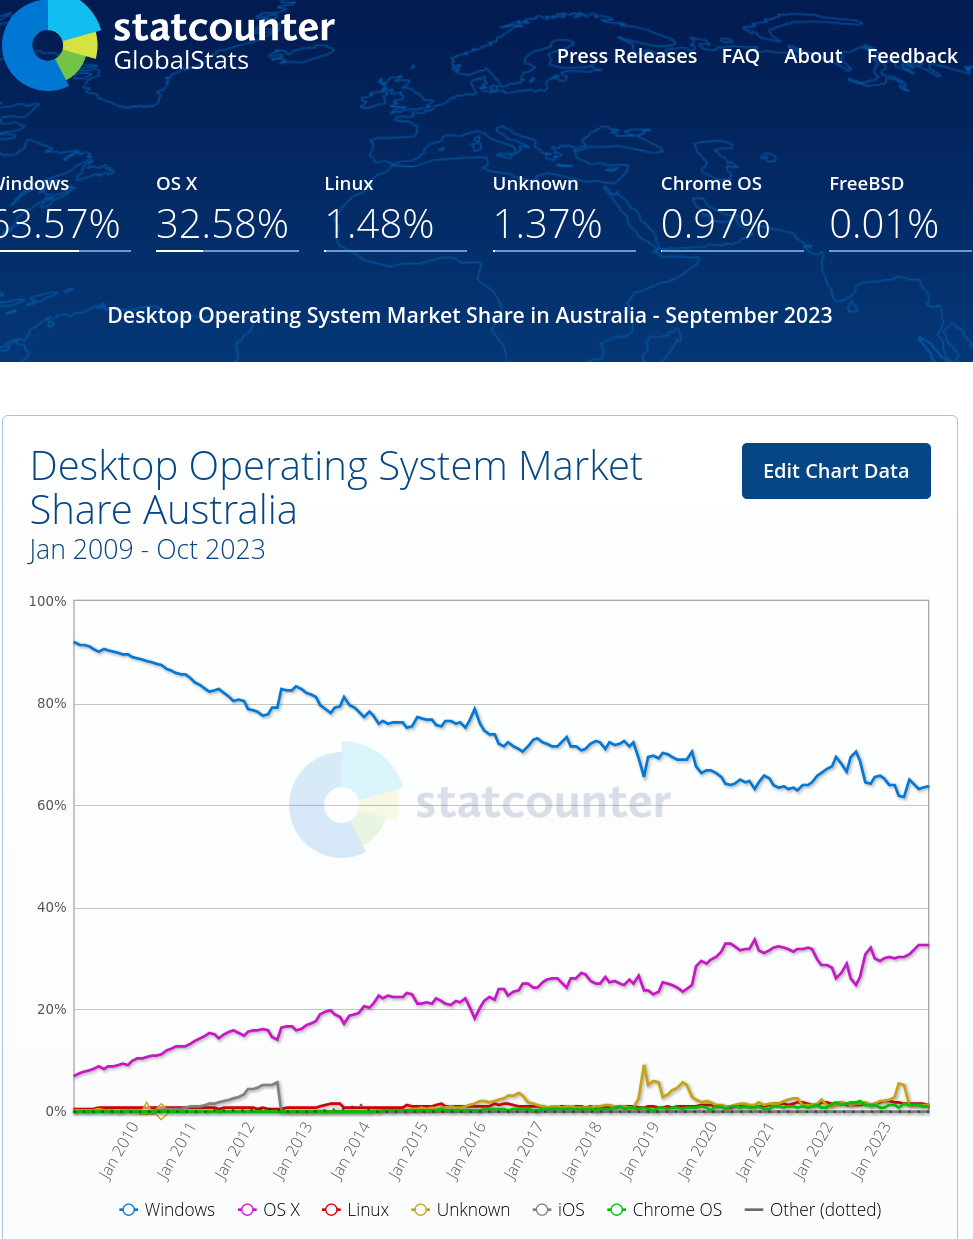 Desktop Operating System Market Share Australia, Jan 2009 - Oct 2023